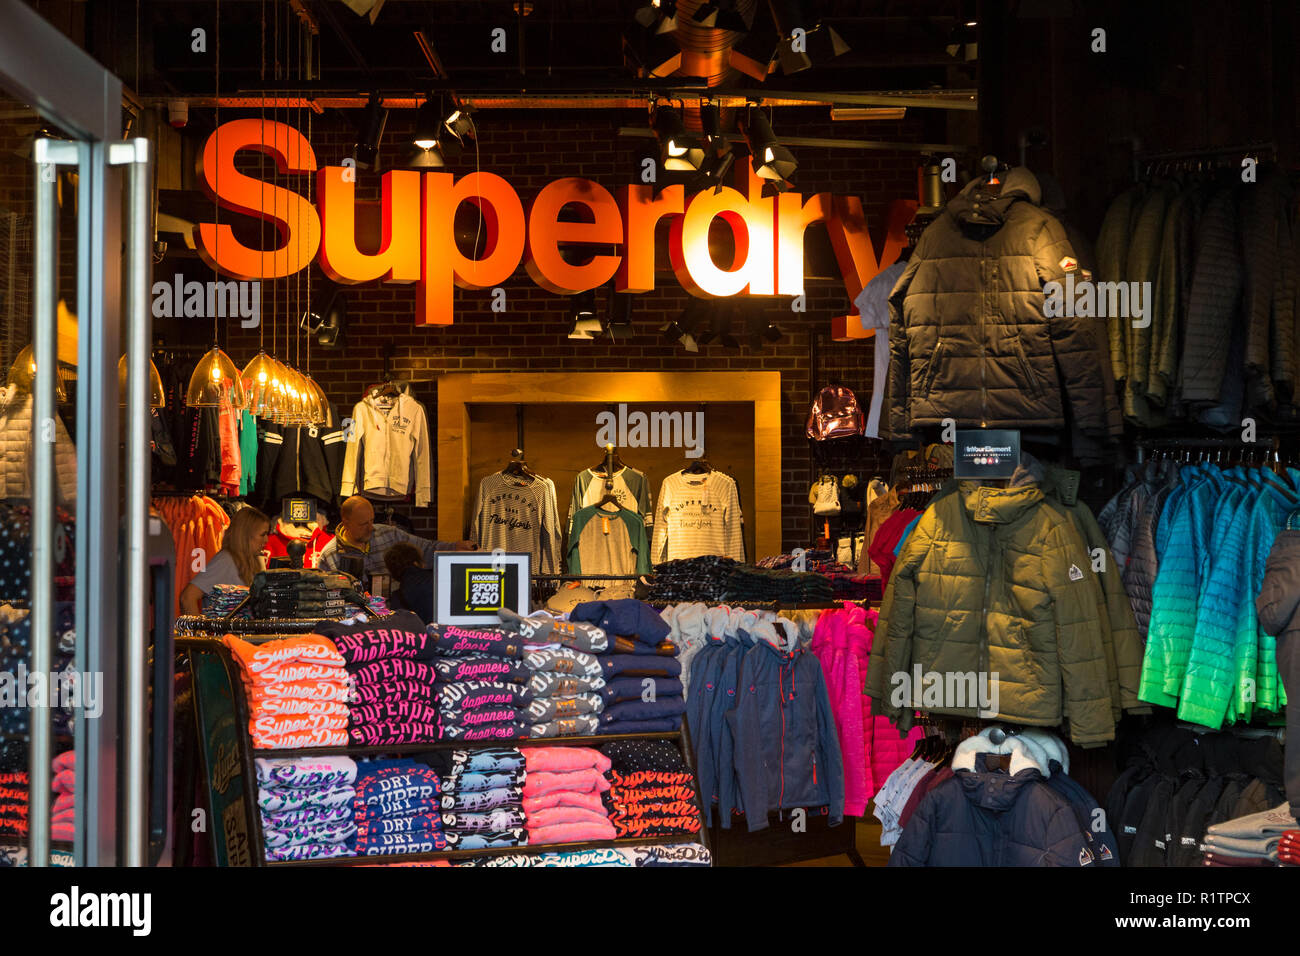 Superdry clothing store, ashford, kent, uk Stock Photo - Alamy